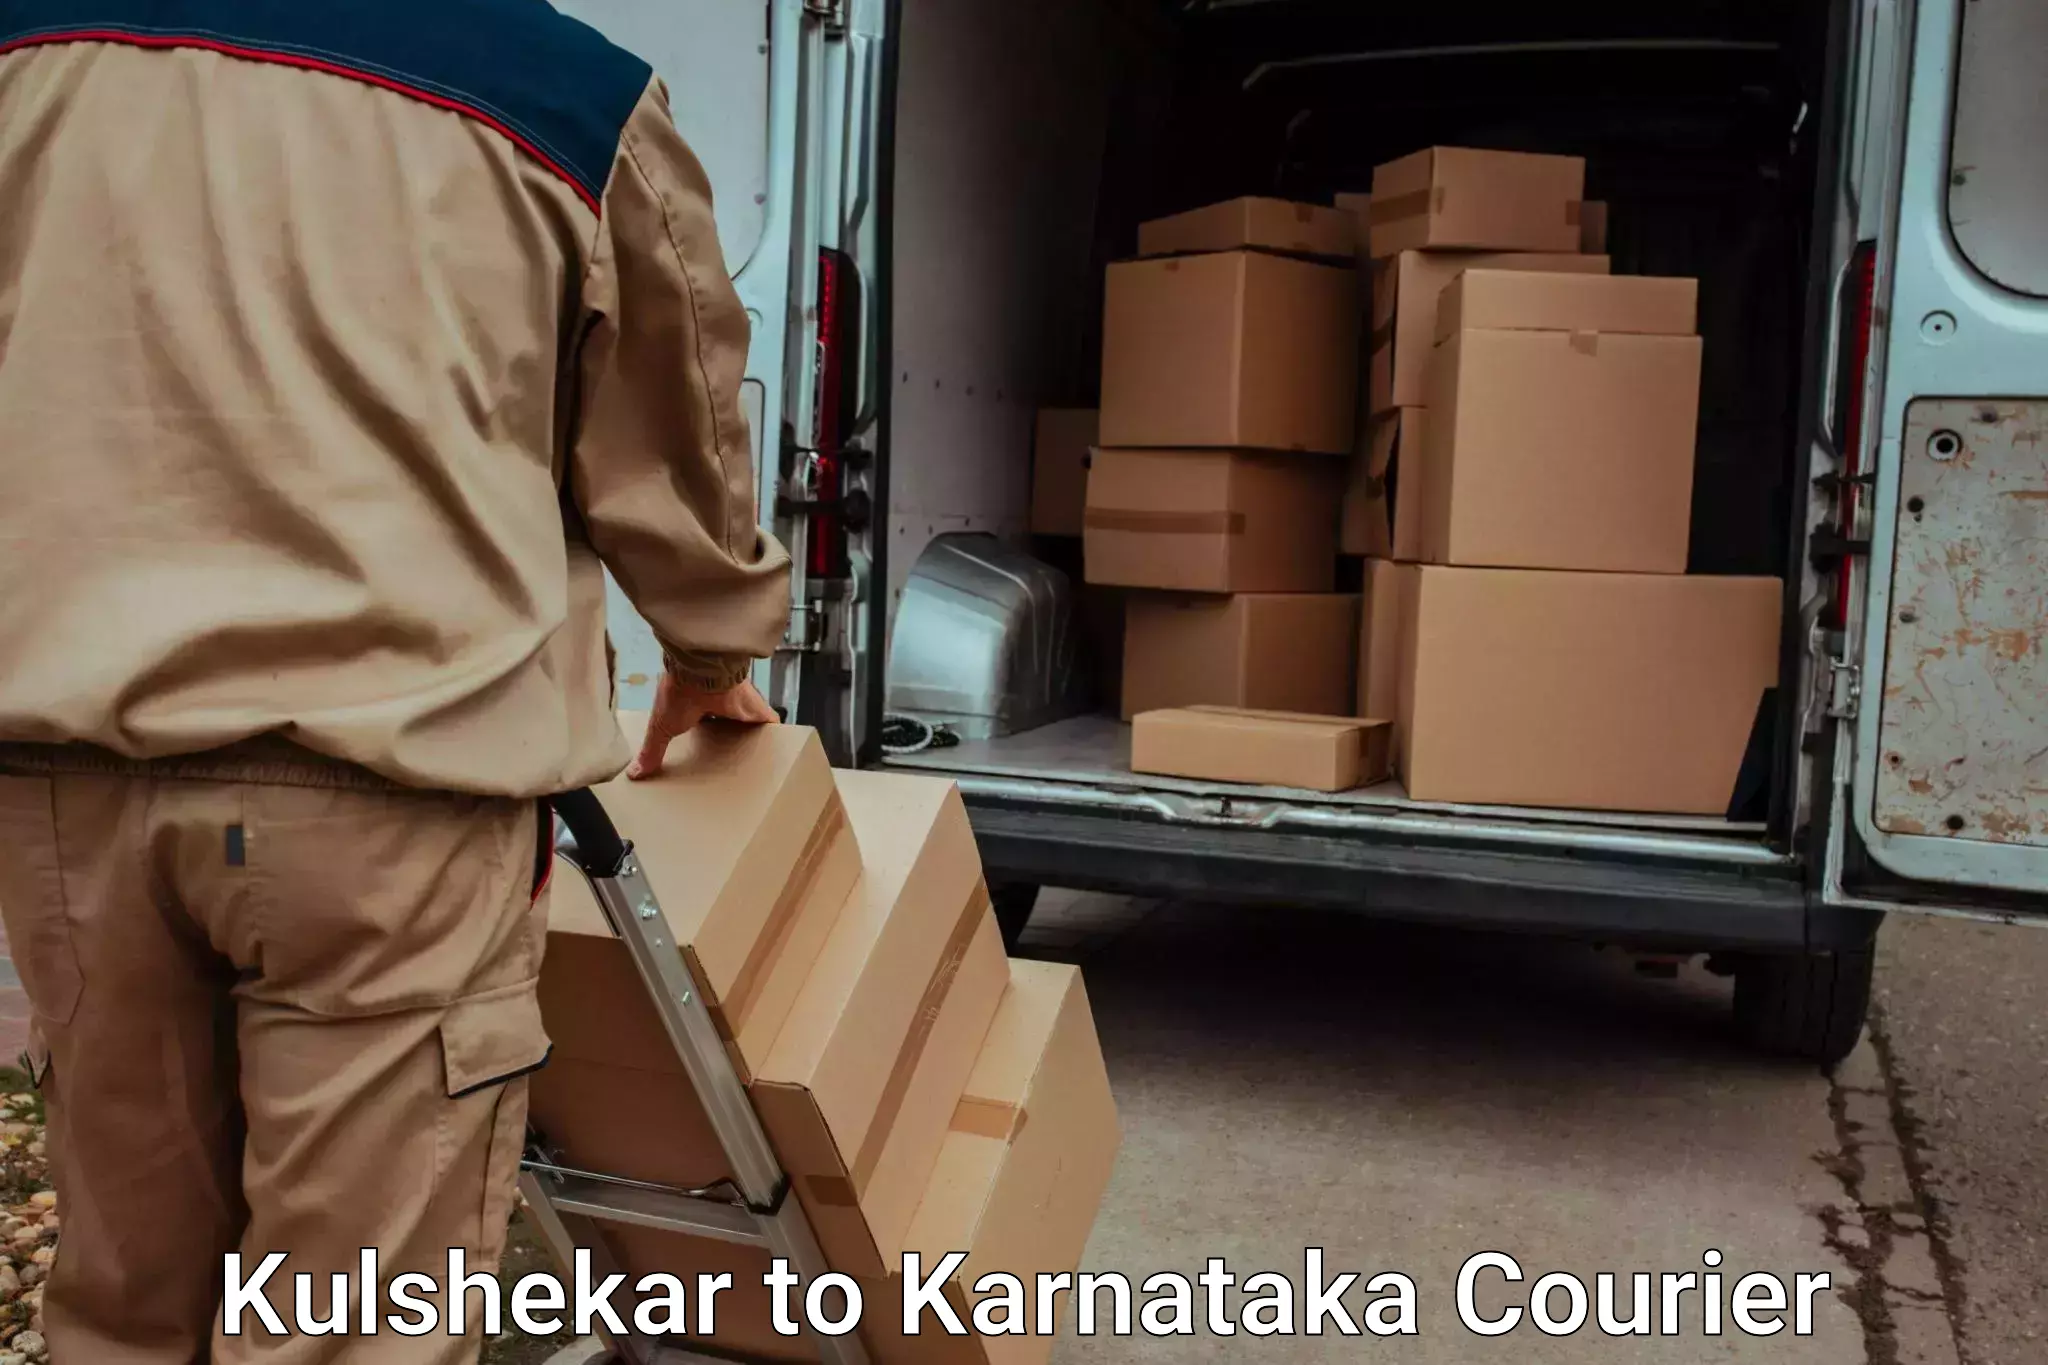 Efficient relocation services Kulshekar to Nelamangala